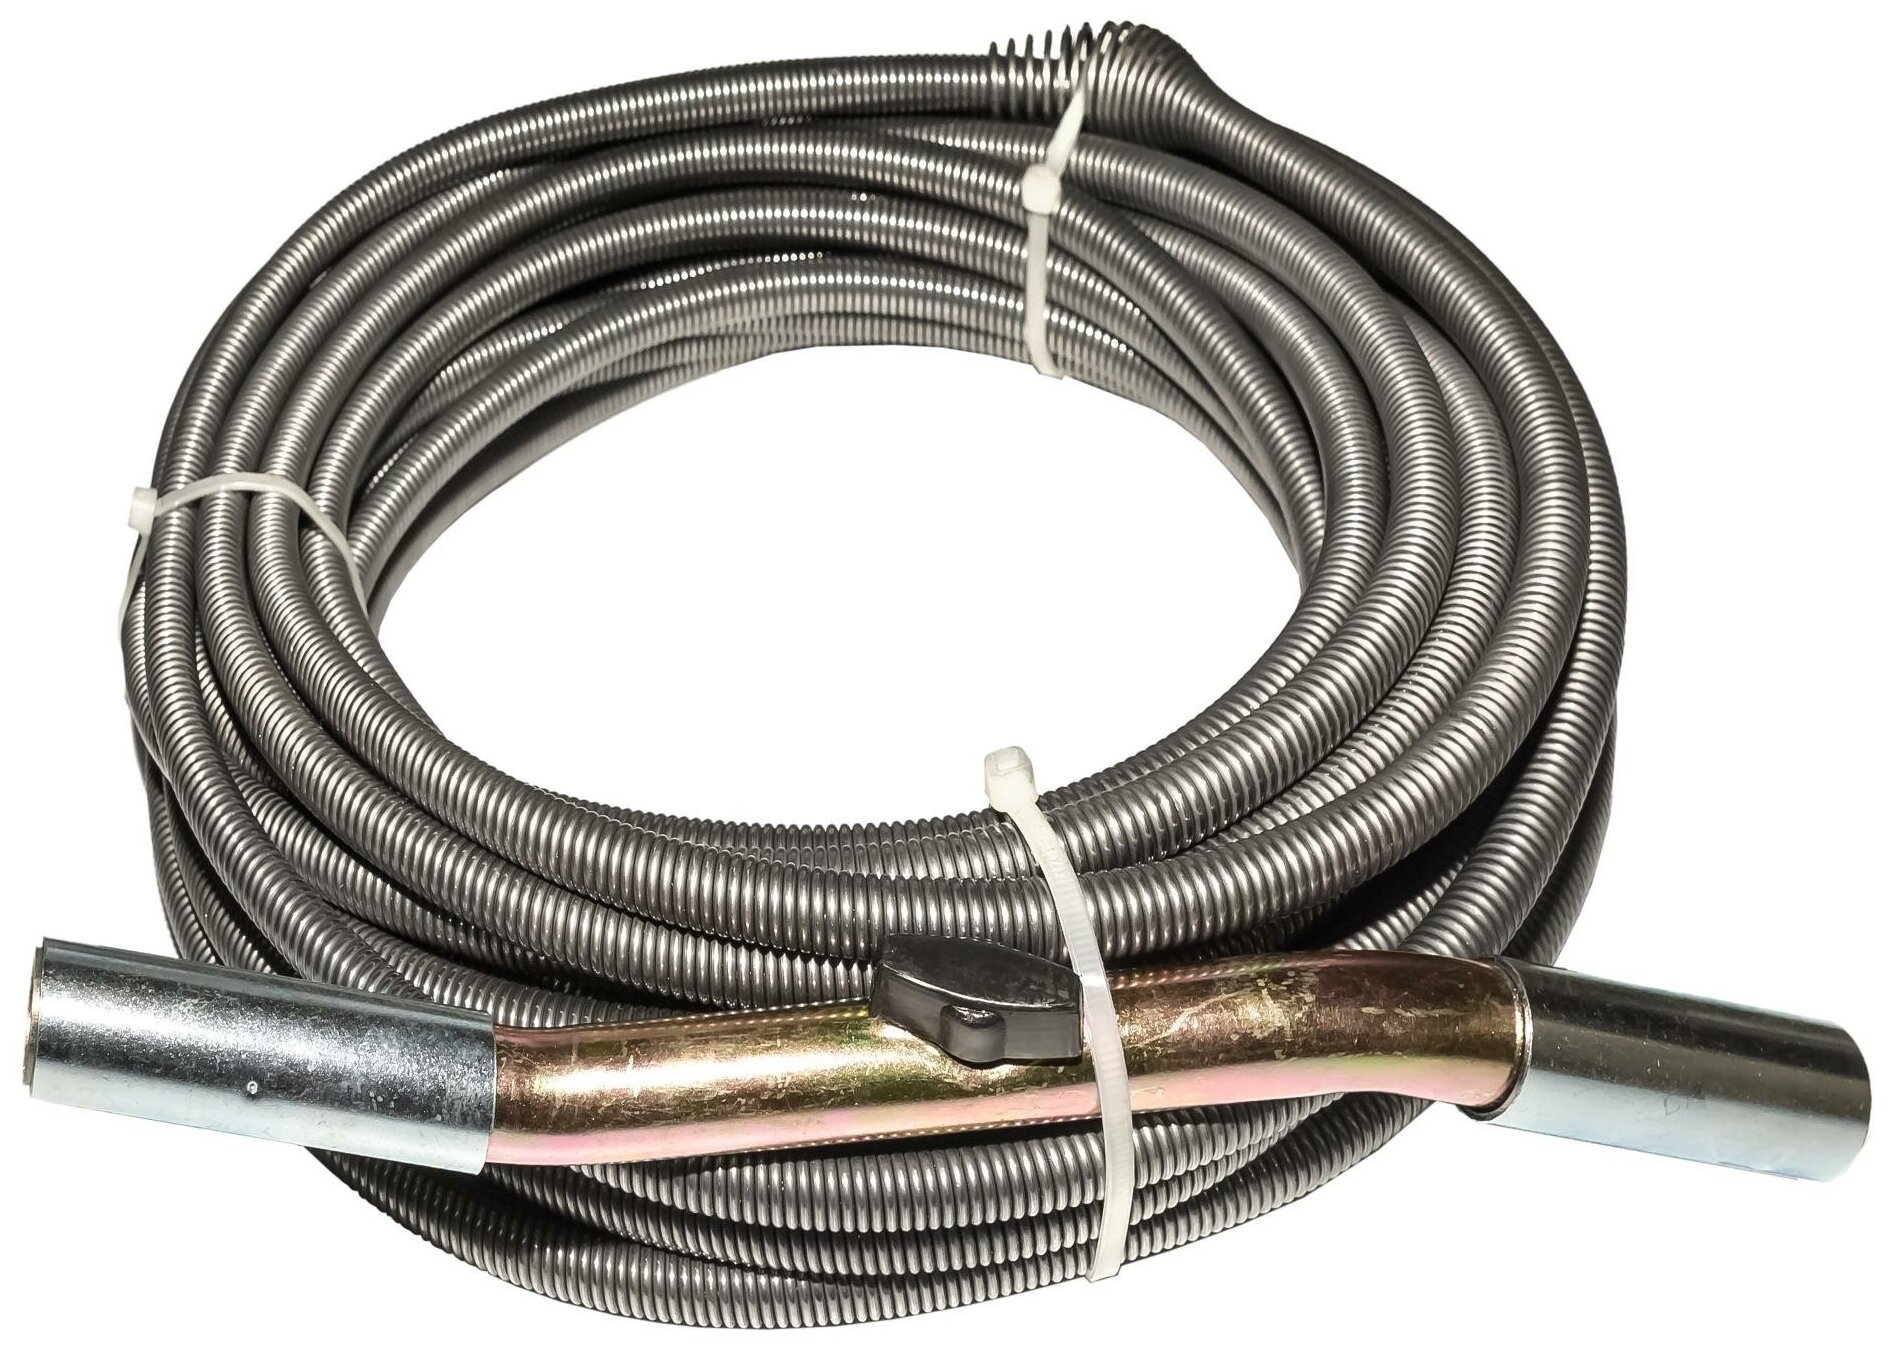 Спираль сантехника с универсальной насадкой для удаления засоров в трубах Ф до 160 мм и длиной до 23 метров CROCODILE 50310-13-23